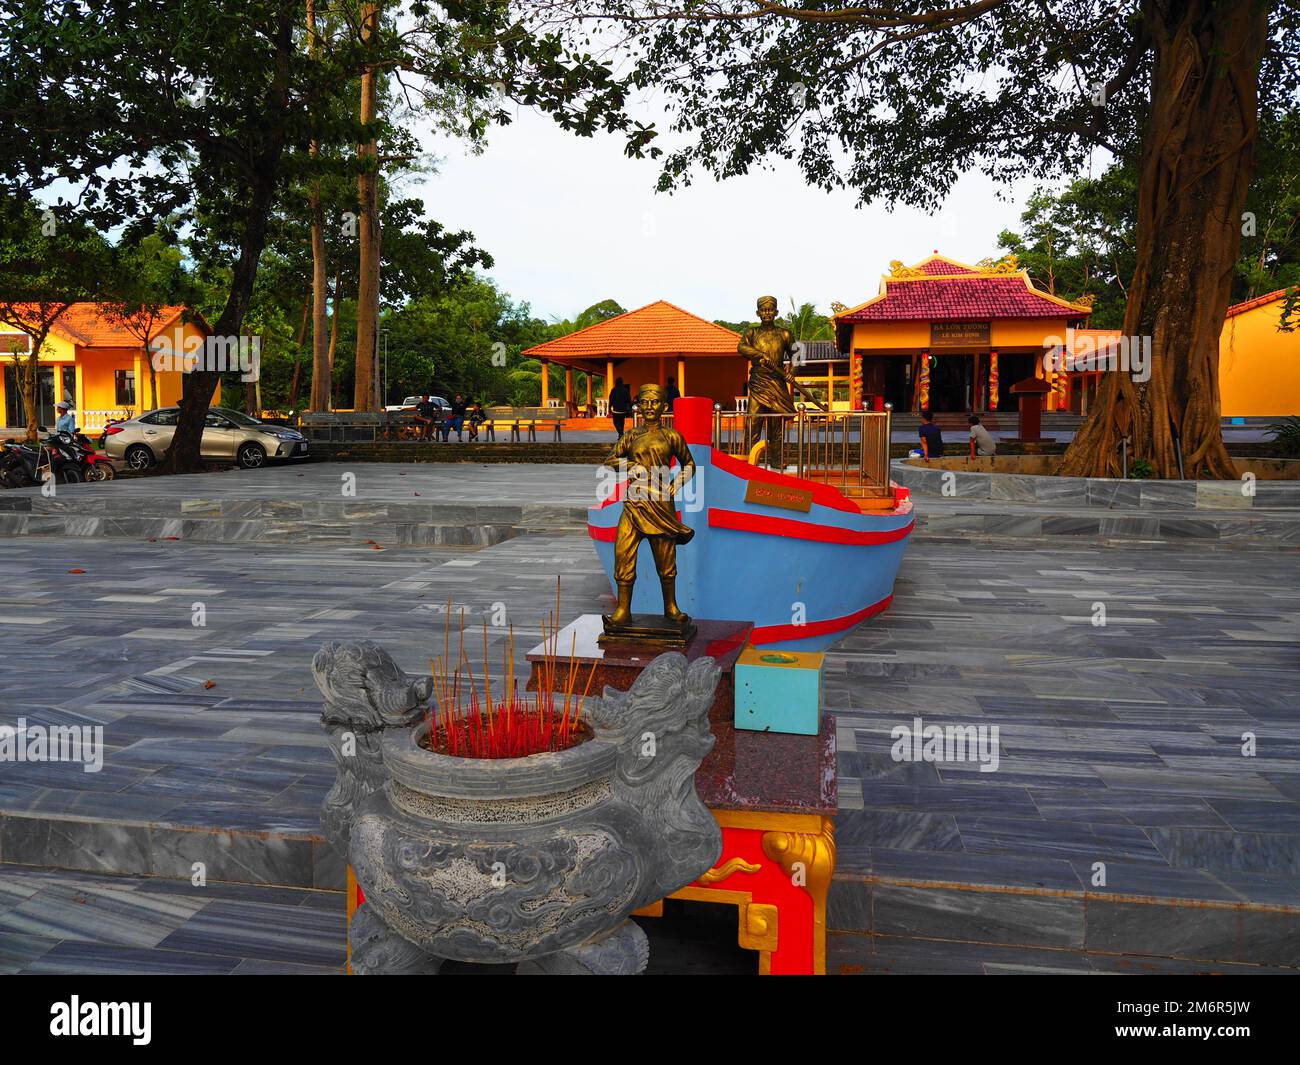 Heiliger buddhistischer Tempel - spirituelles Ziel in Phu Quoc, Vietnam, Südostasien #Asien #Vietnam #Südostasien #Slow travel #Loveasia Stockfoto